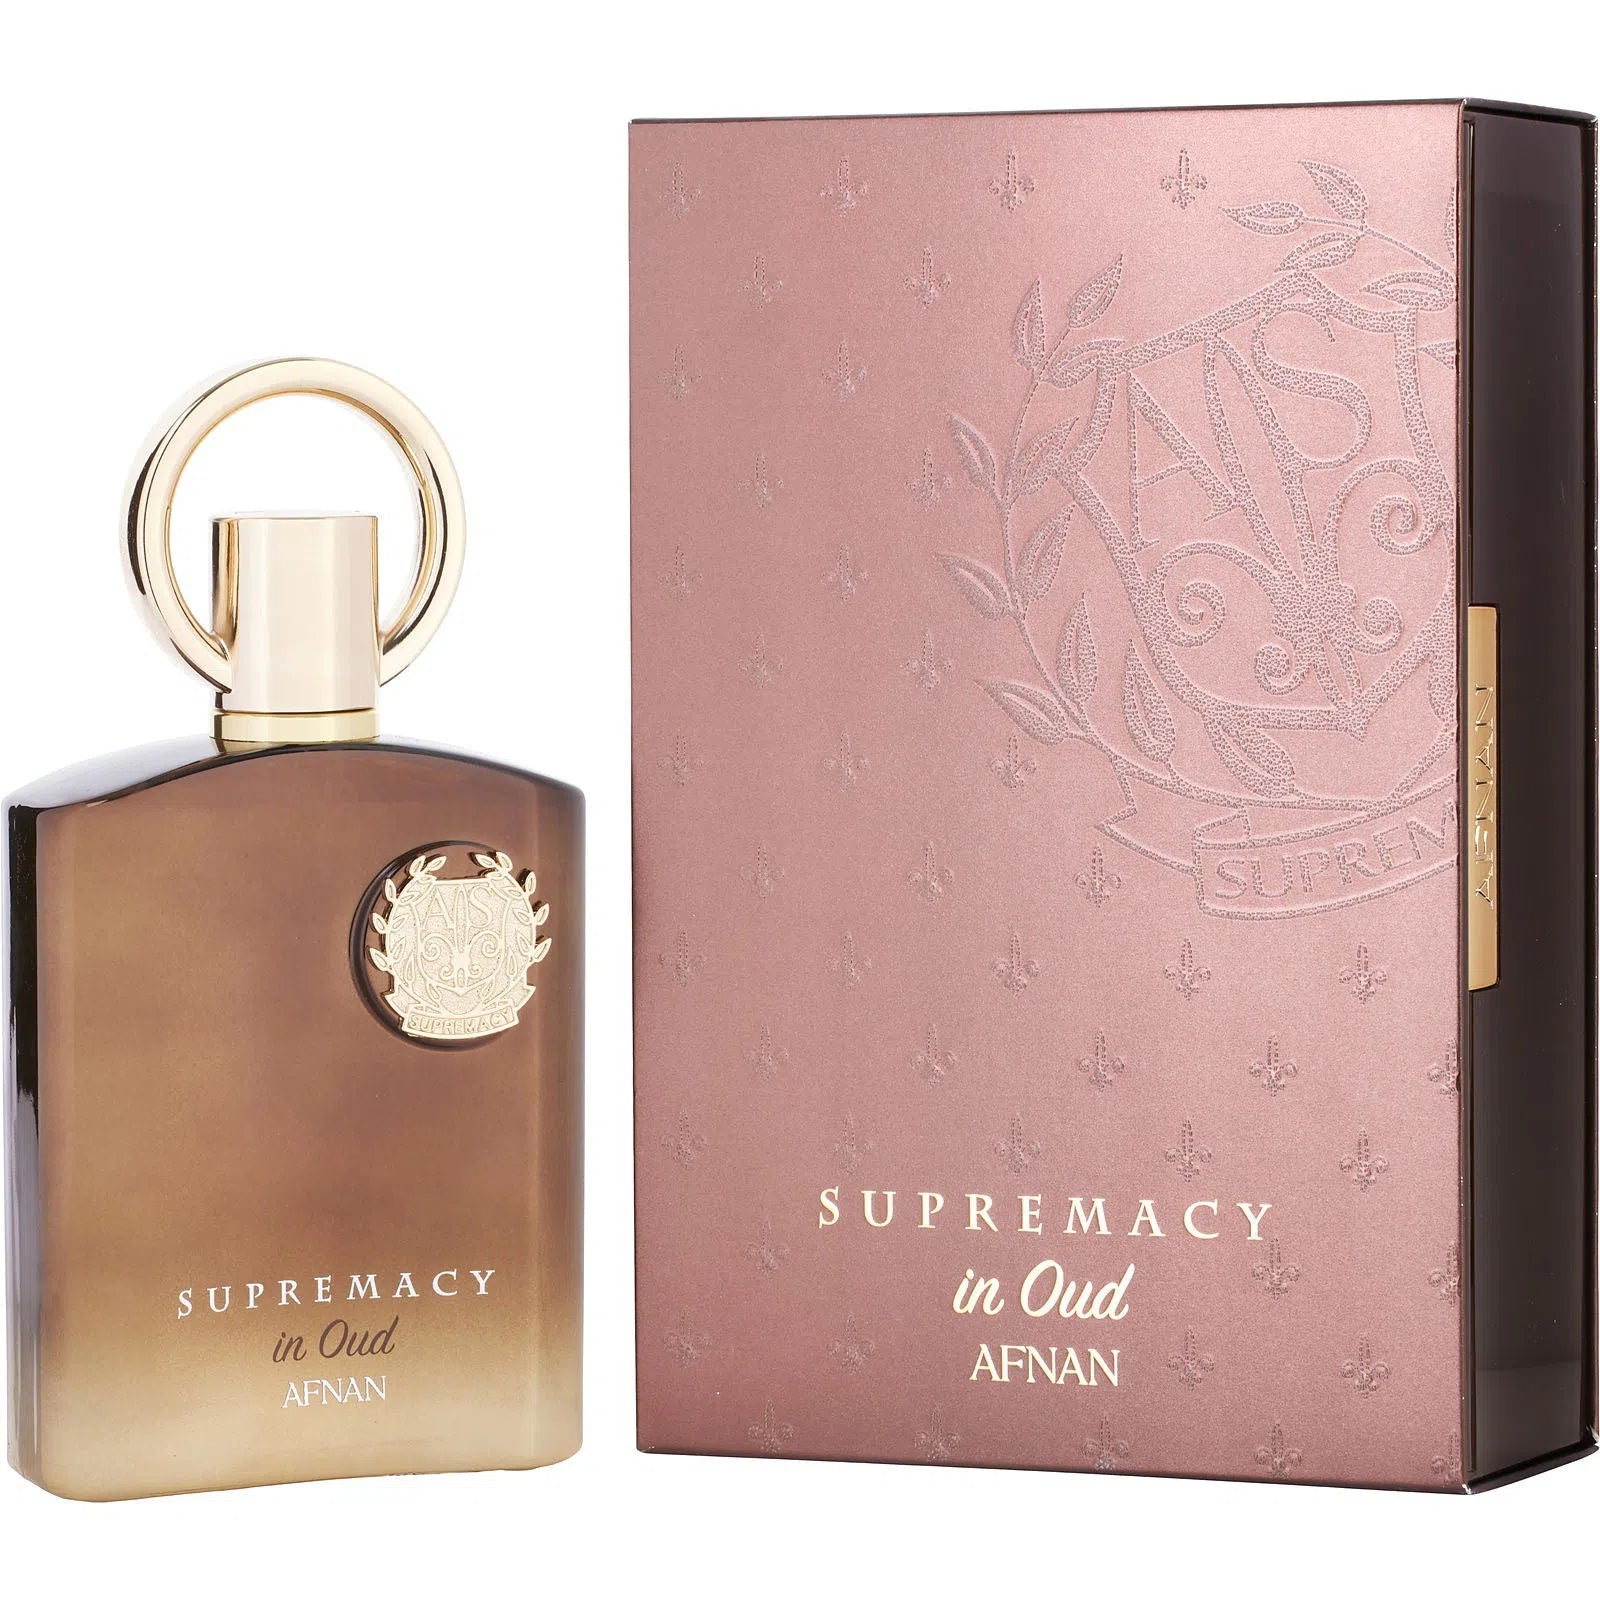 Perfume Afnan Supremacy In Oud Parfum (U) / 100 ml - 6290171070207- Prive Perfumes Honduras